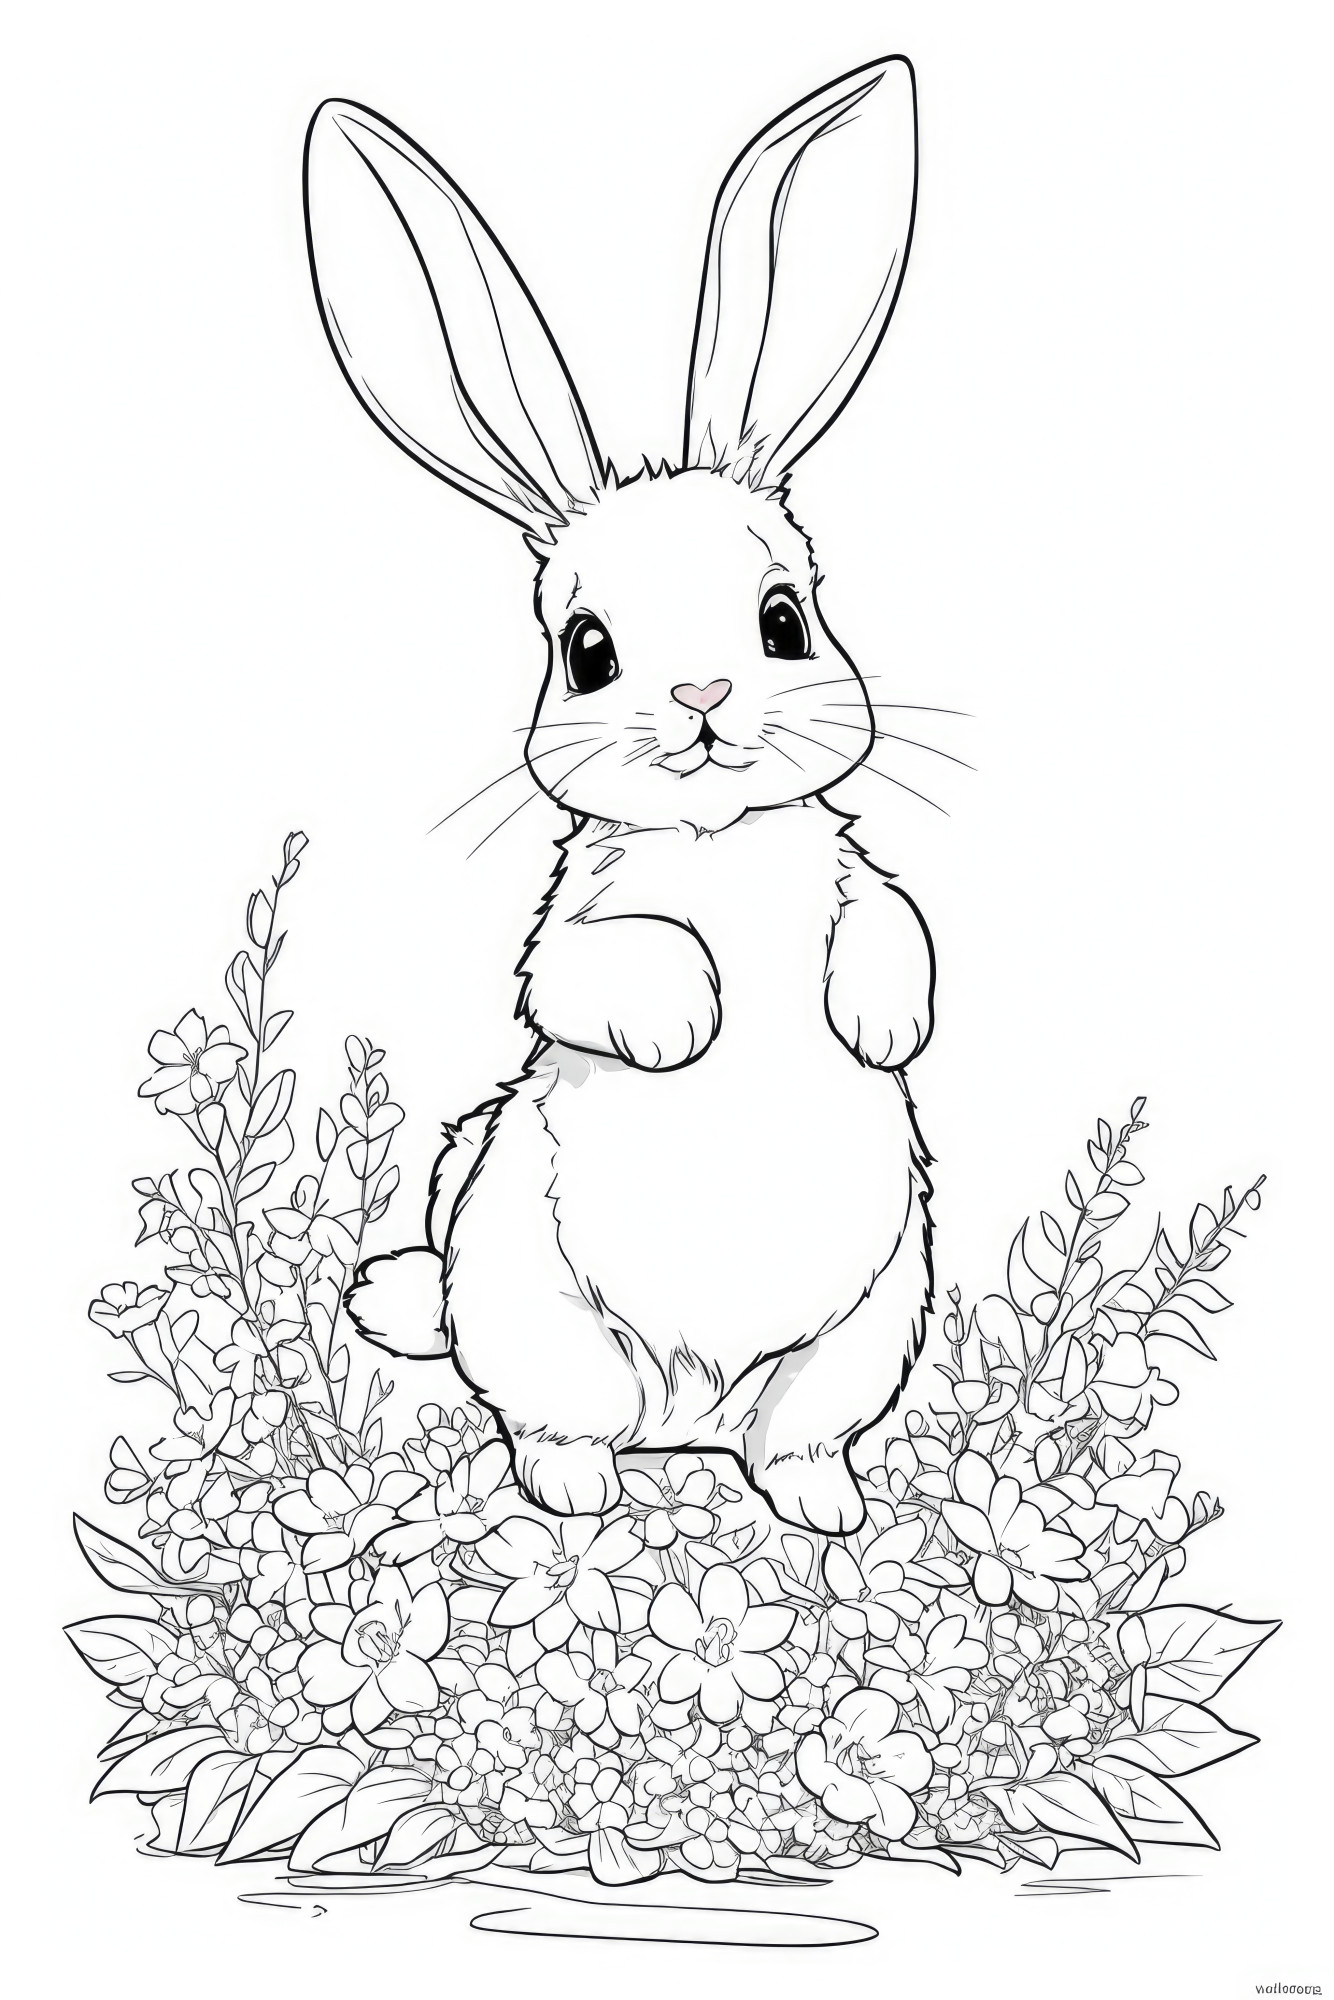 Раскраска для детей: заяц стоит в клумбе цветов на задних лапках